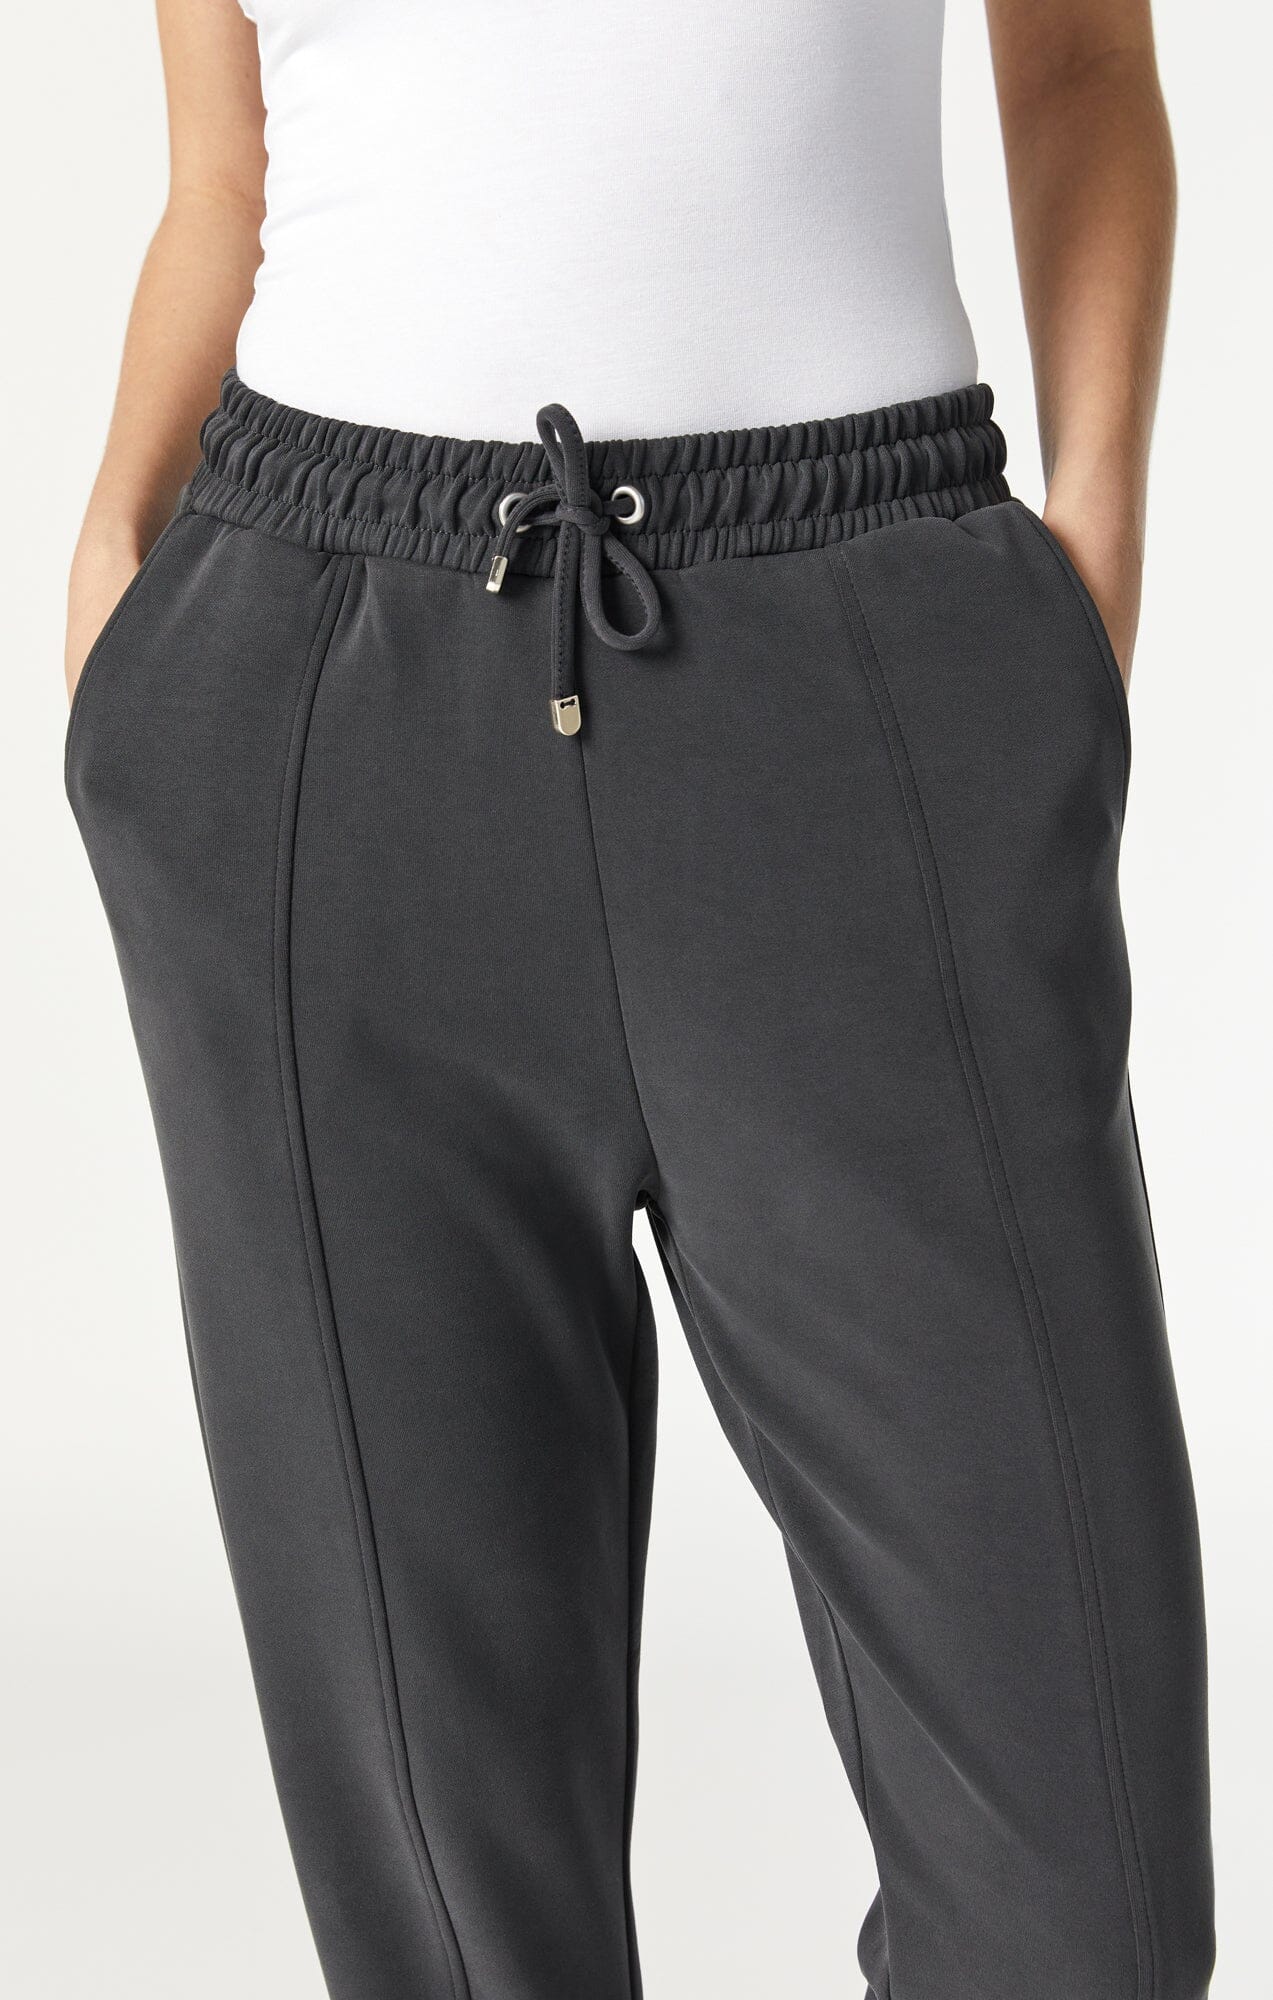 Women's Pants, Jeans, Joggers + Sweatpants